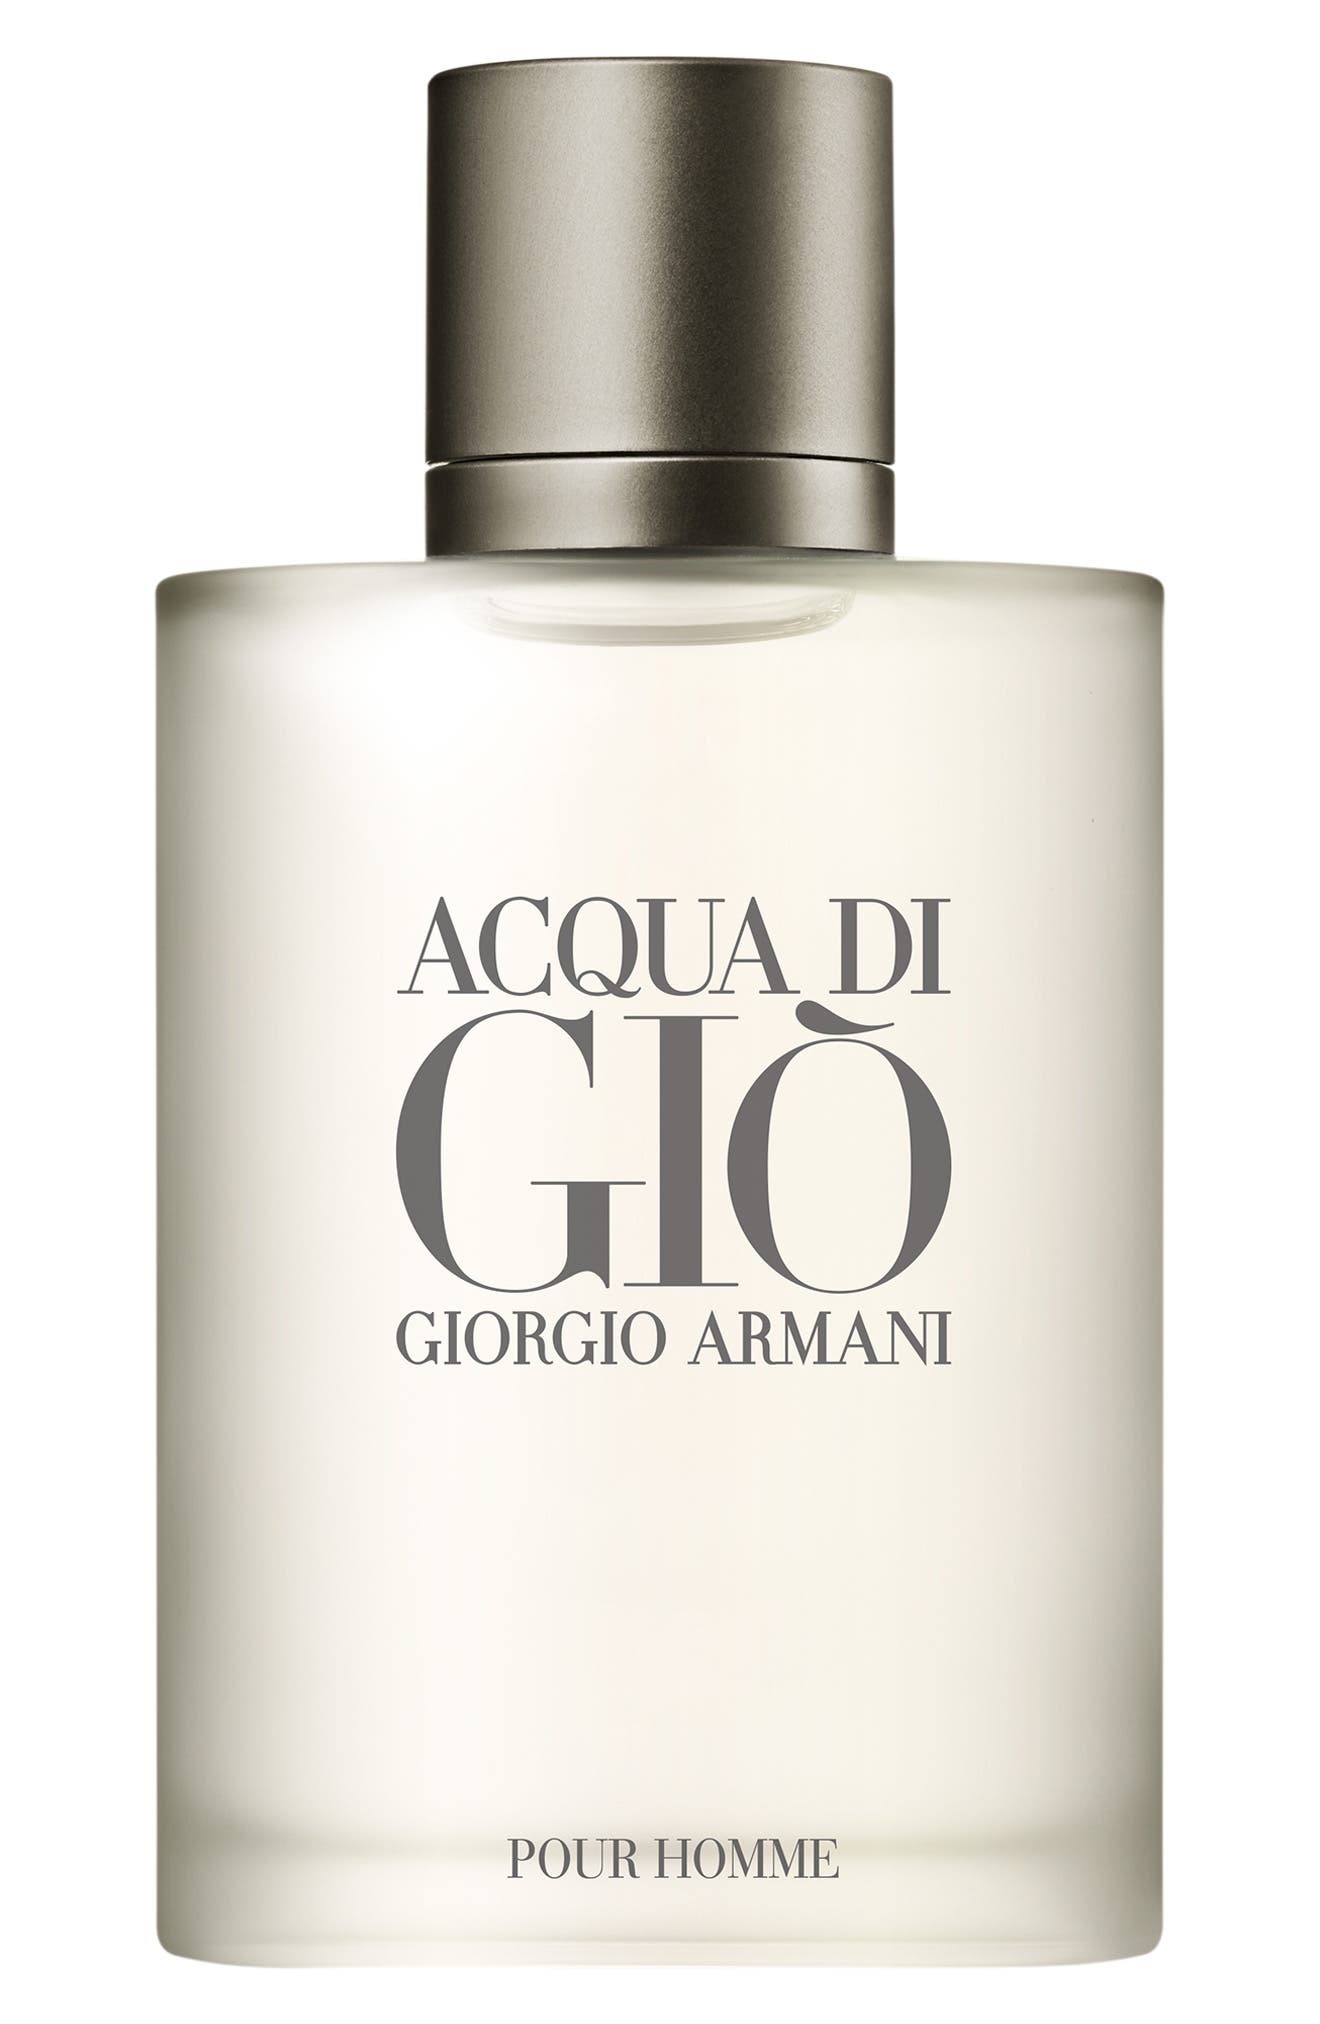 Giorgio Armani Acqua Di Gio Cologne Factory Sale, 50% OFF | www 